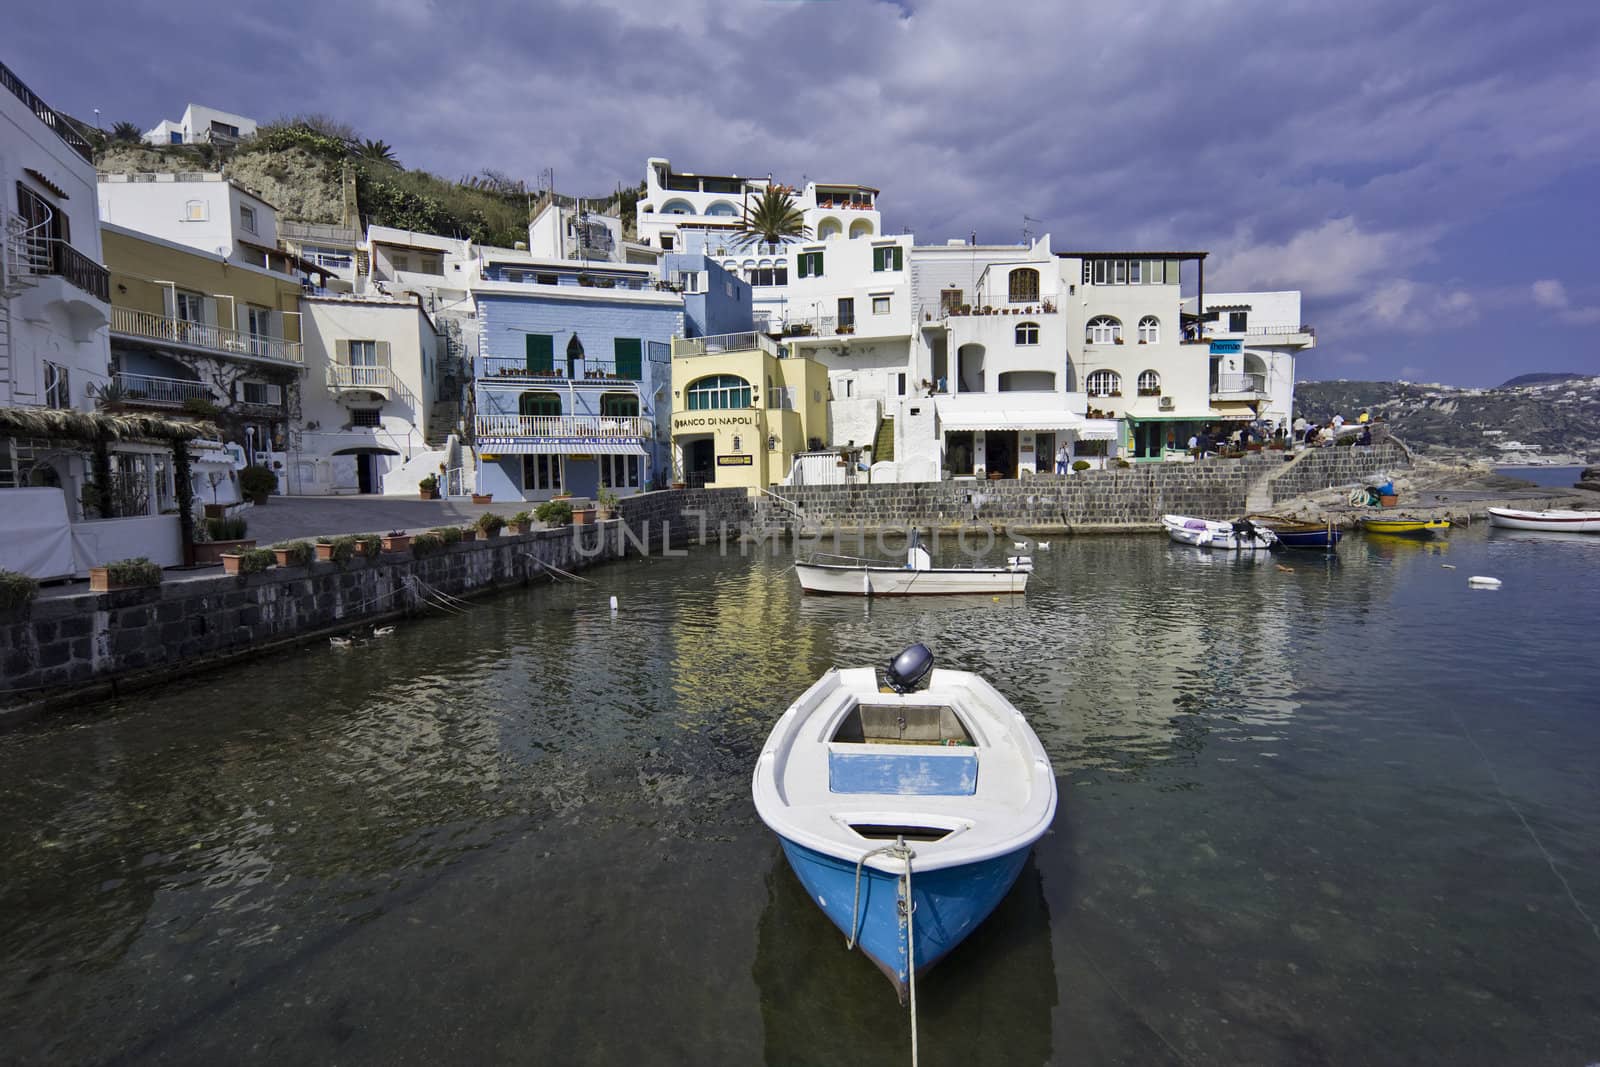 ITALY, Campania, Ischia island, S.Angelo, fishermen boats at S.Angelo by agiampiccolo